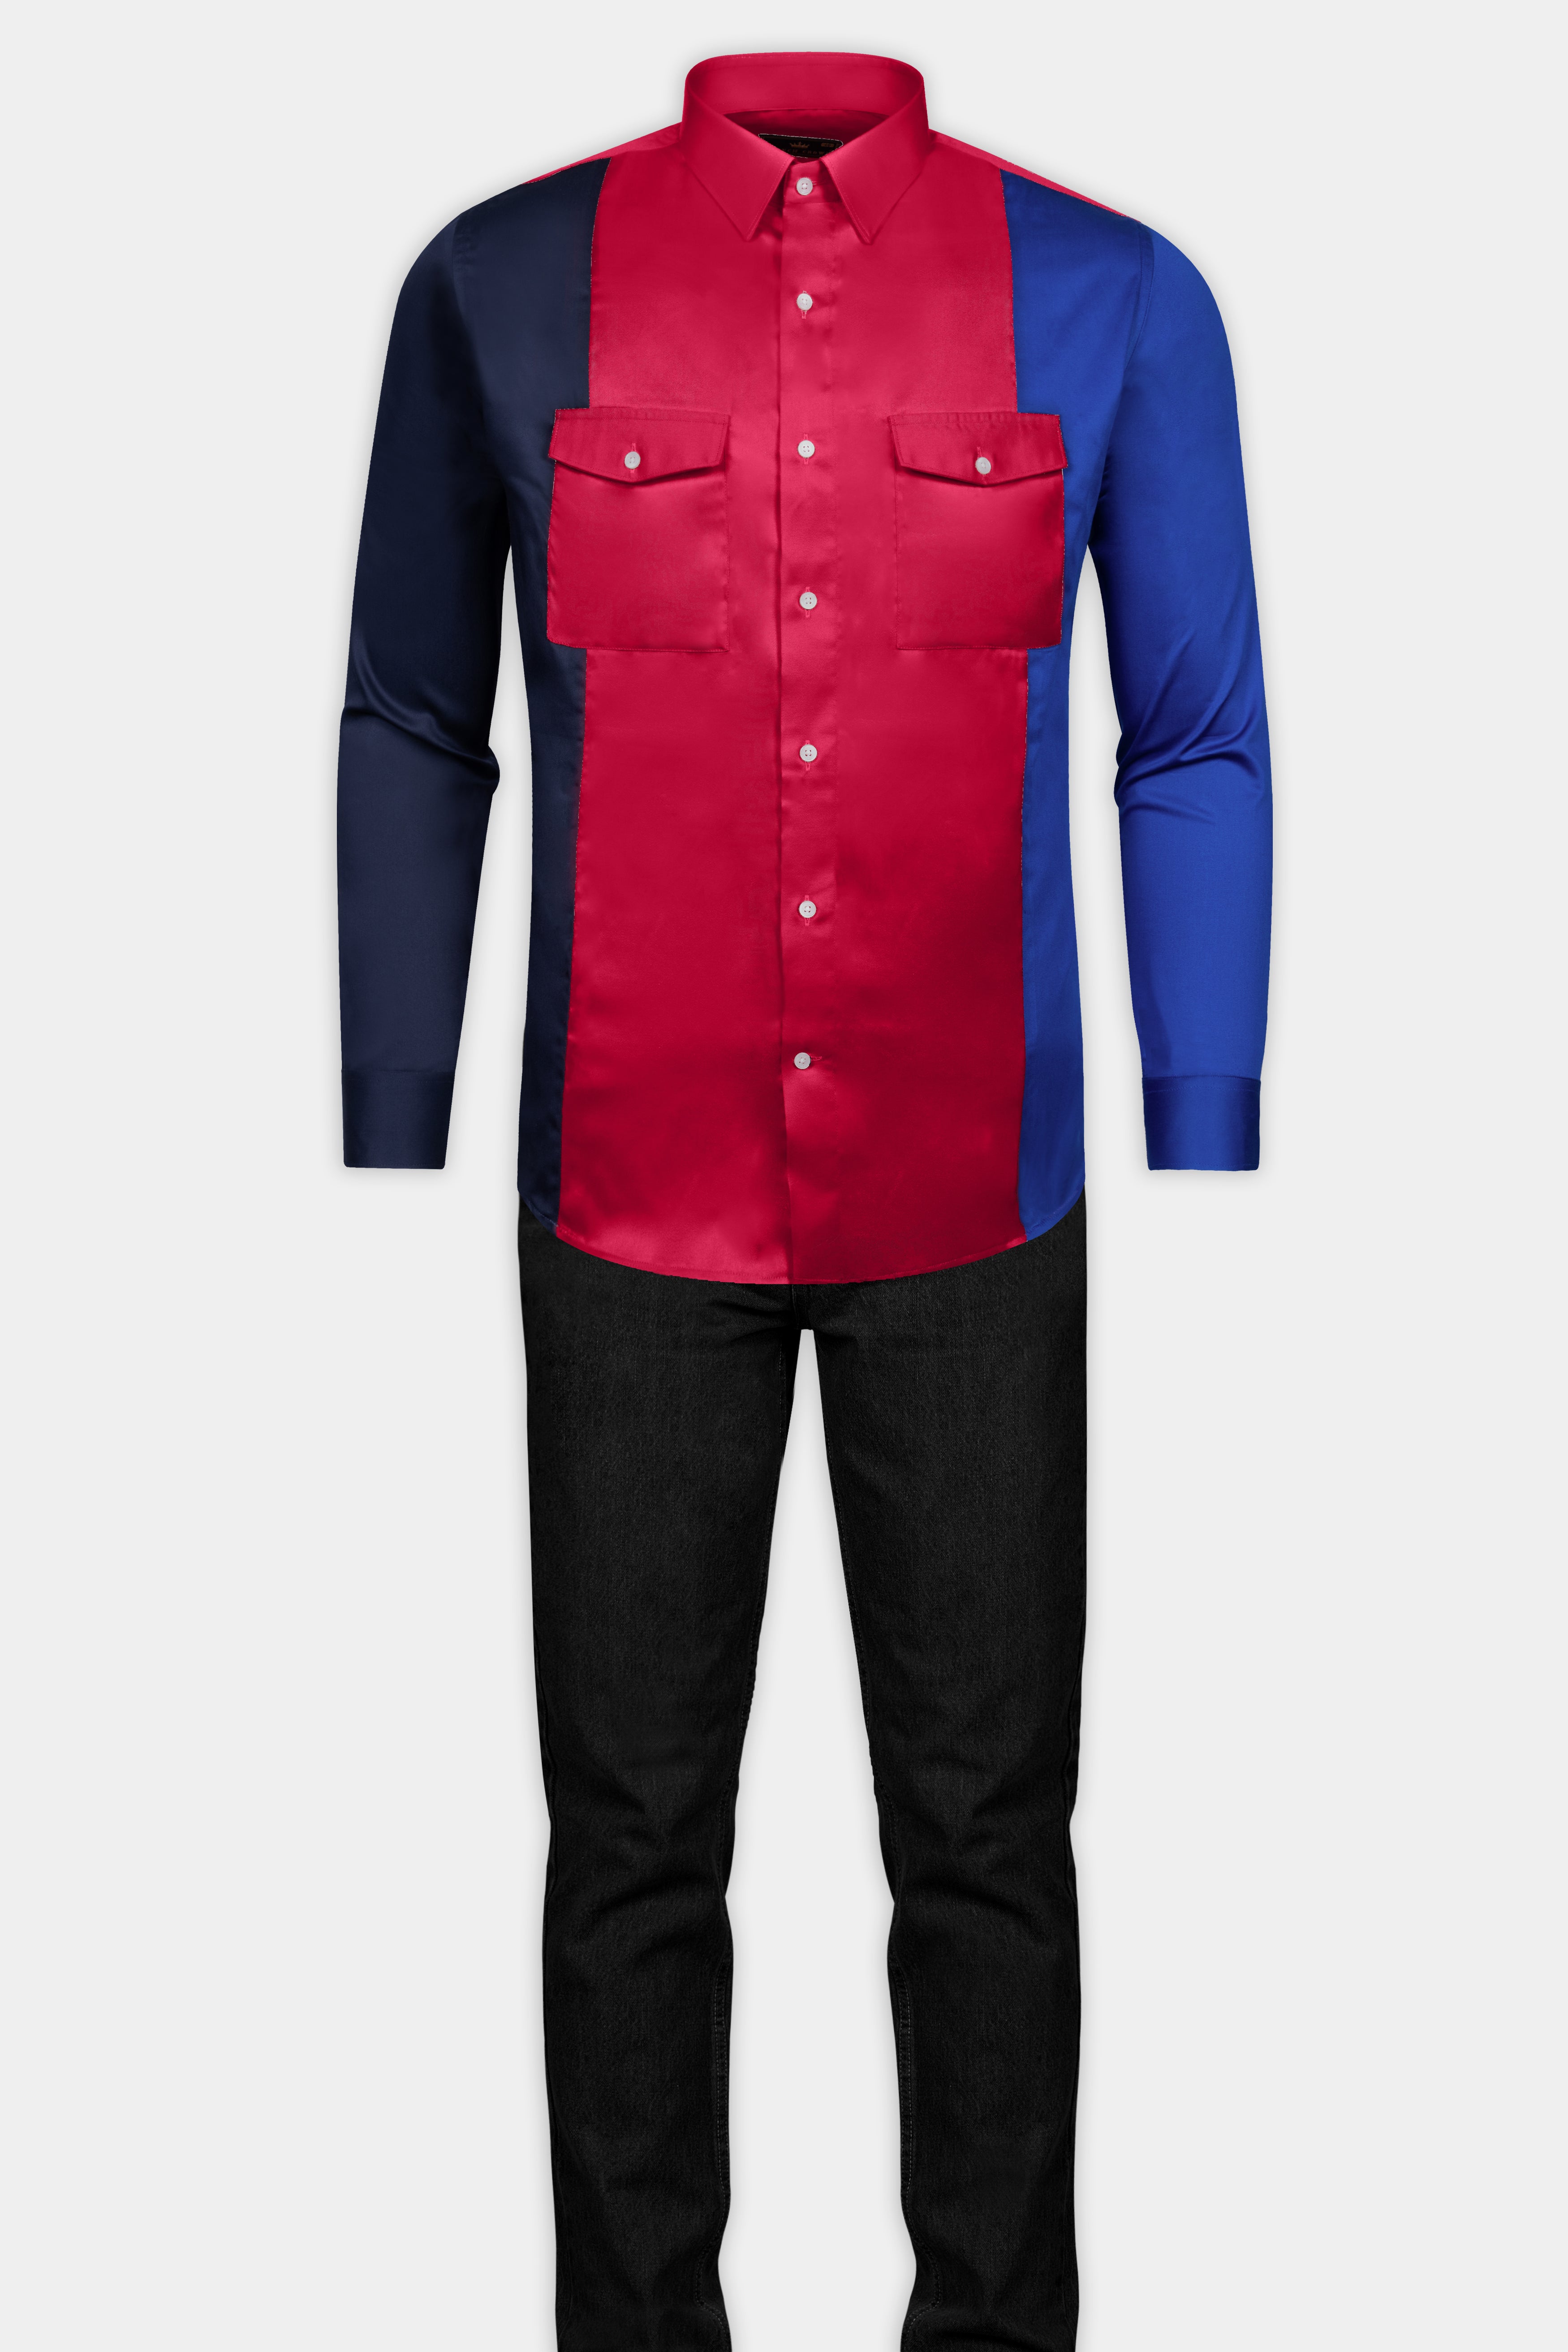 Shiraz Red with Catalina Blue and Ebony Blue Super Soft Premium Cotton Designer Shirt